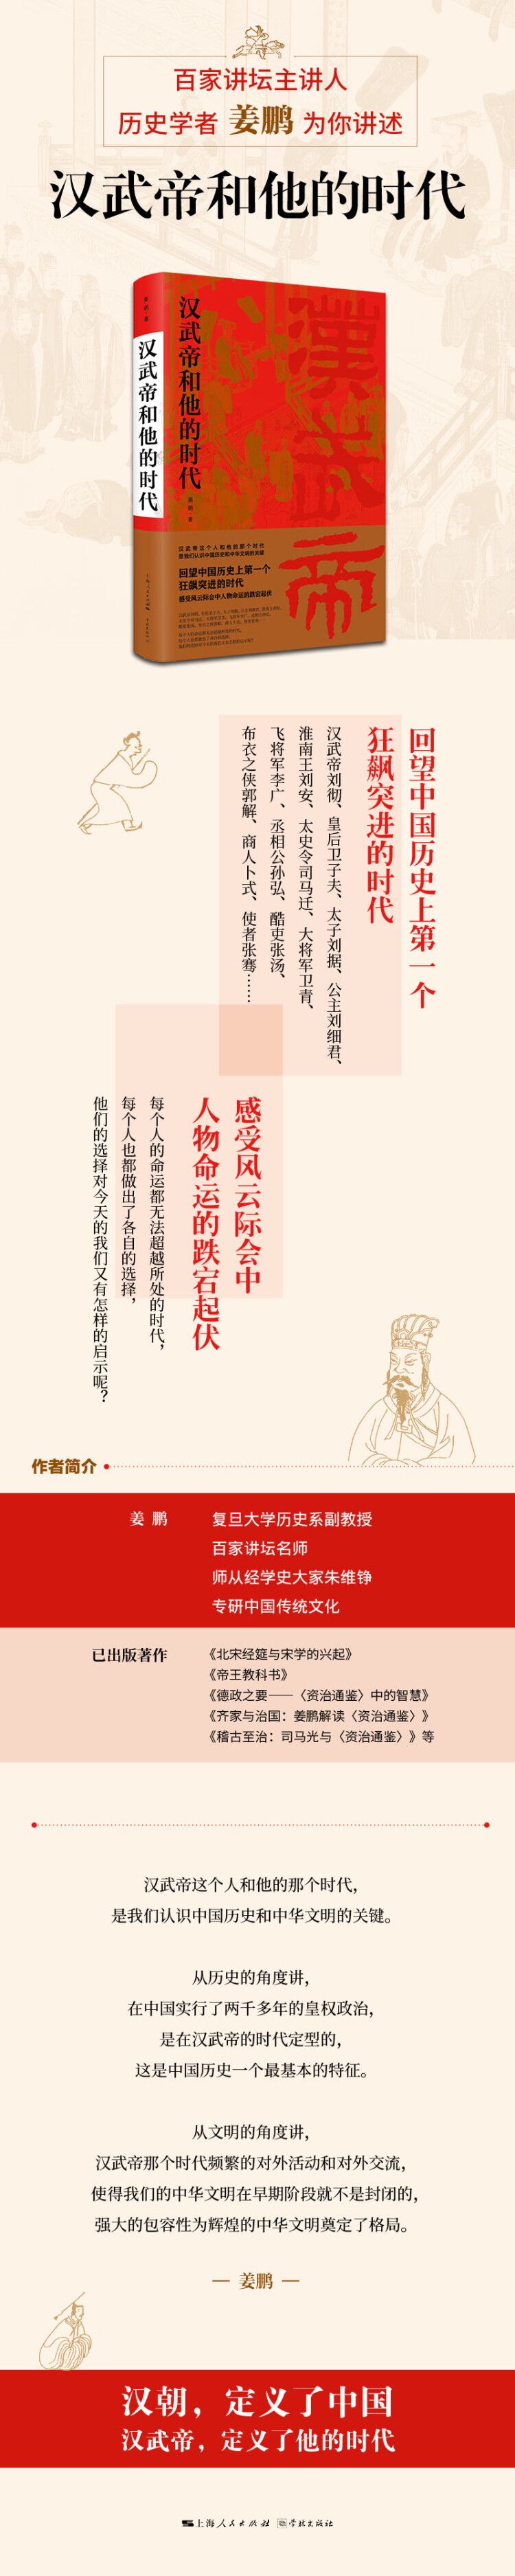 汉武帝和他的时代 姜鹏 摘要书评试读 京东图书